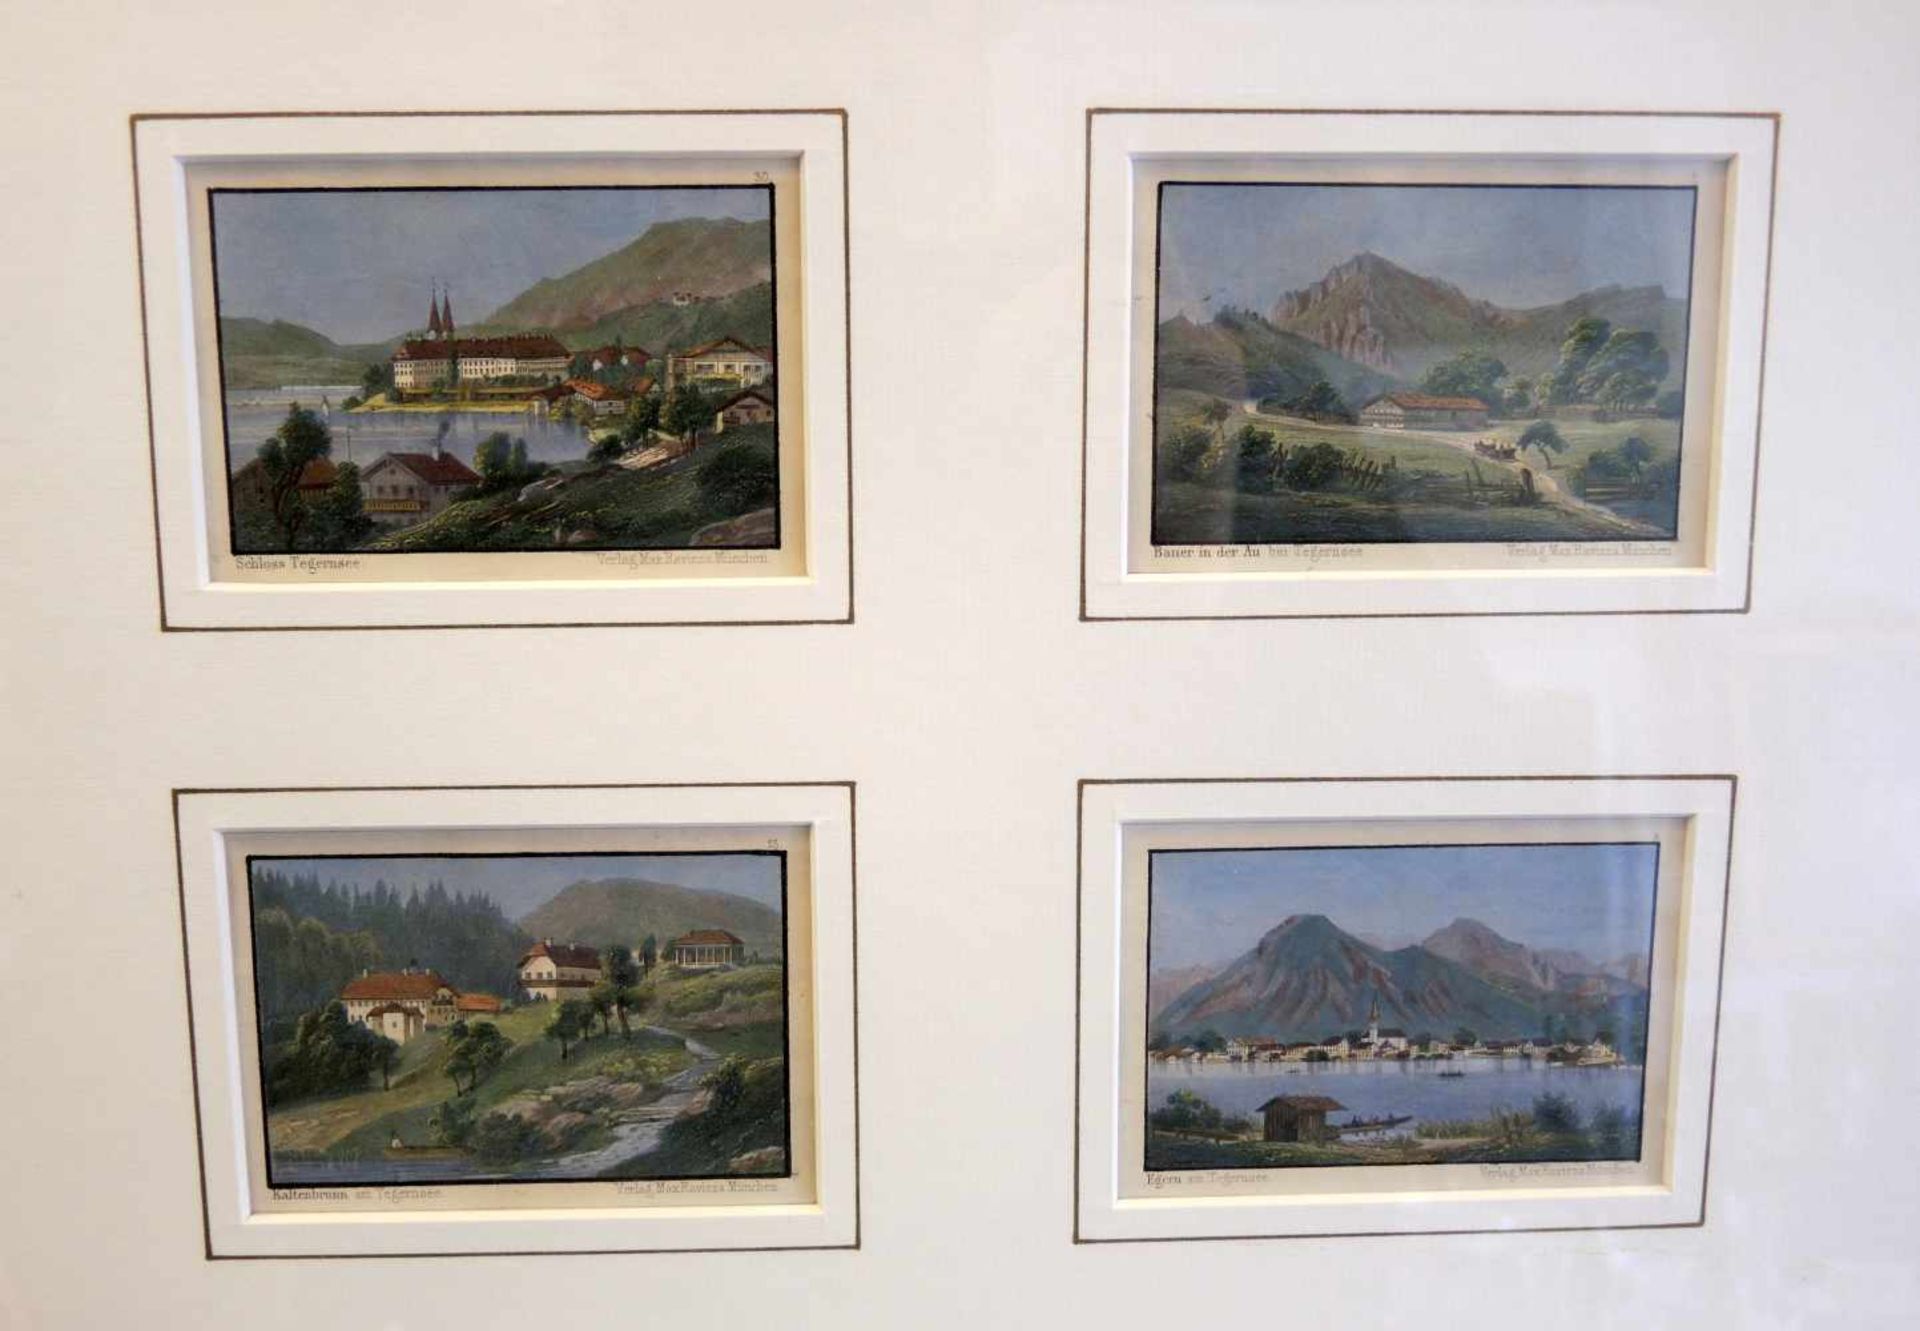 Sammlung von Tegernseer AnsichtenAquatinta-Gouache/Papier. Sammlung von 4 Tegernseer Ansichten, - Bild 2 aus 3